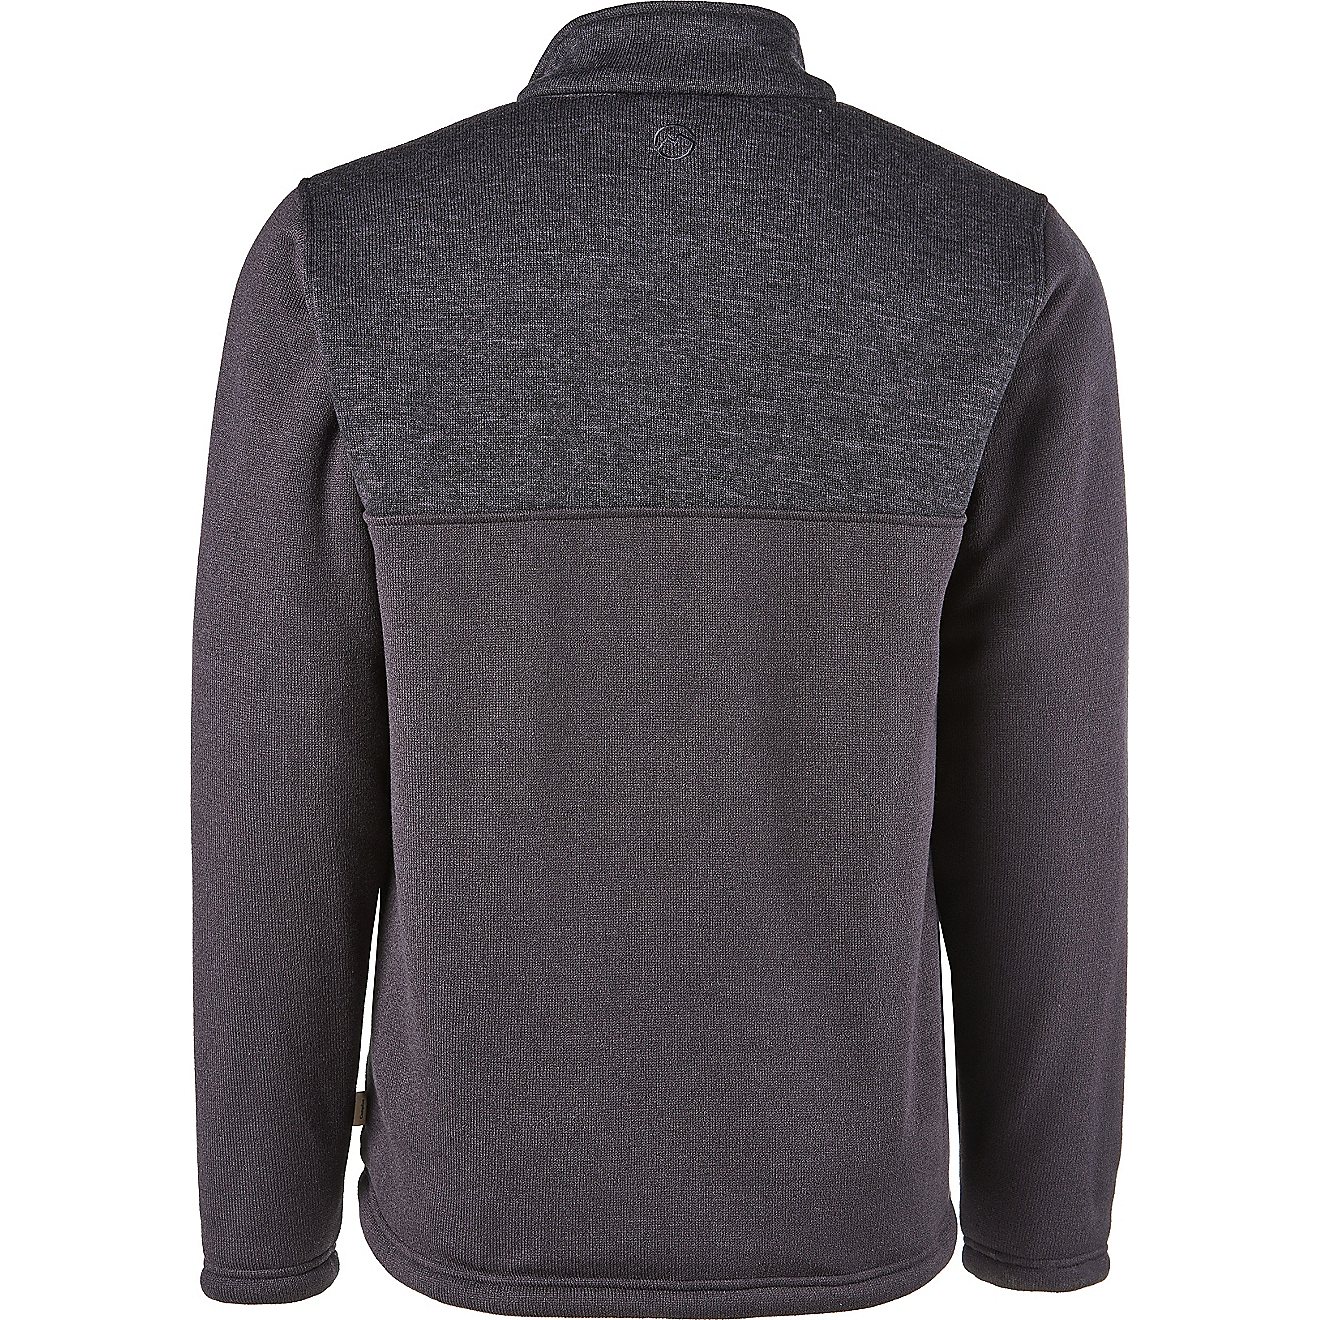 Magellan Outdoors Men's Sweater Fleece Jacket                                                                                    - view number 5